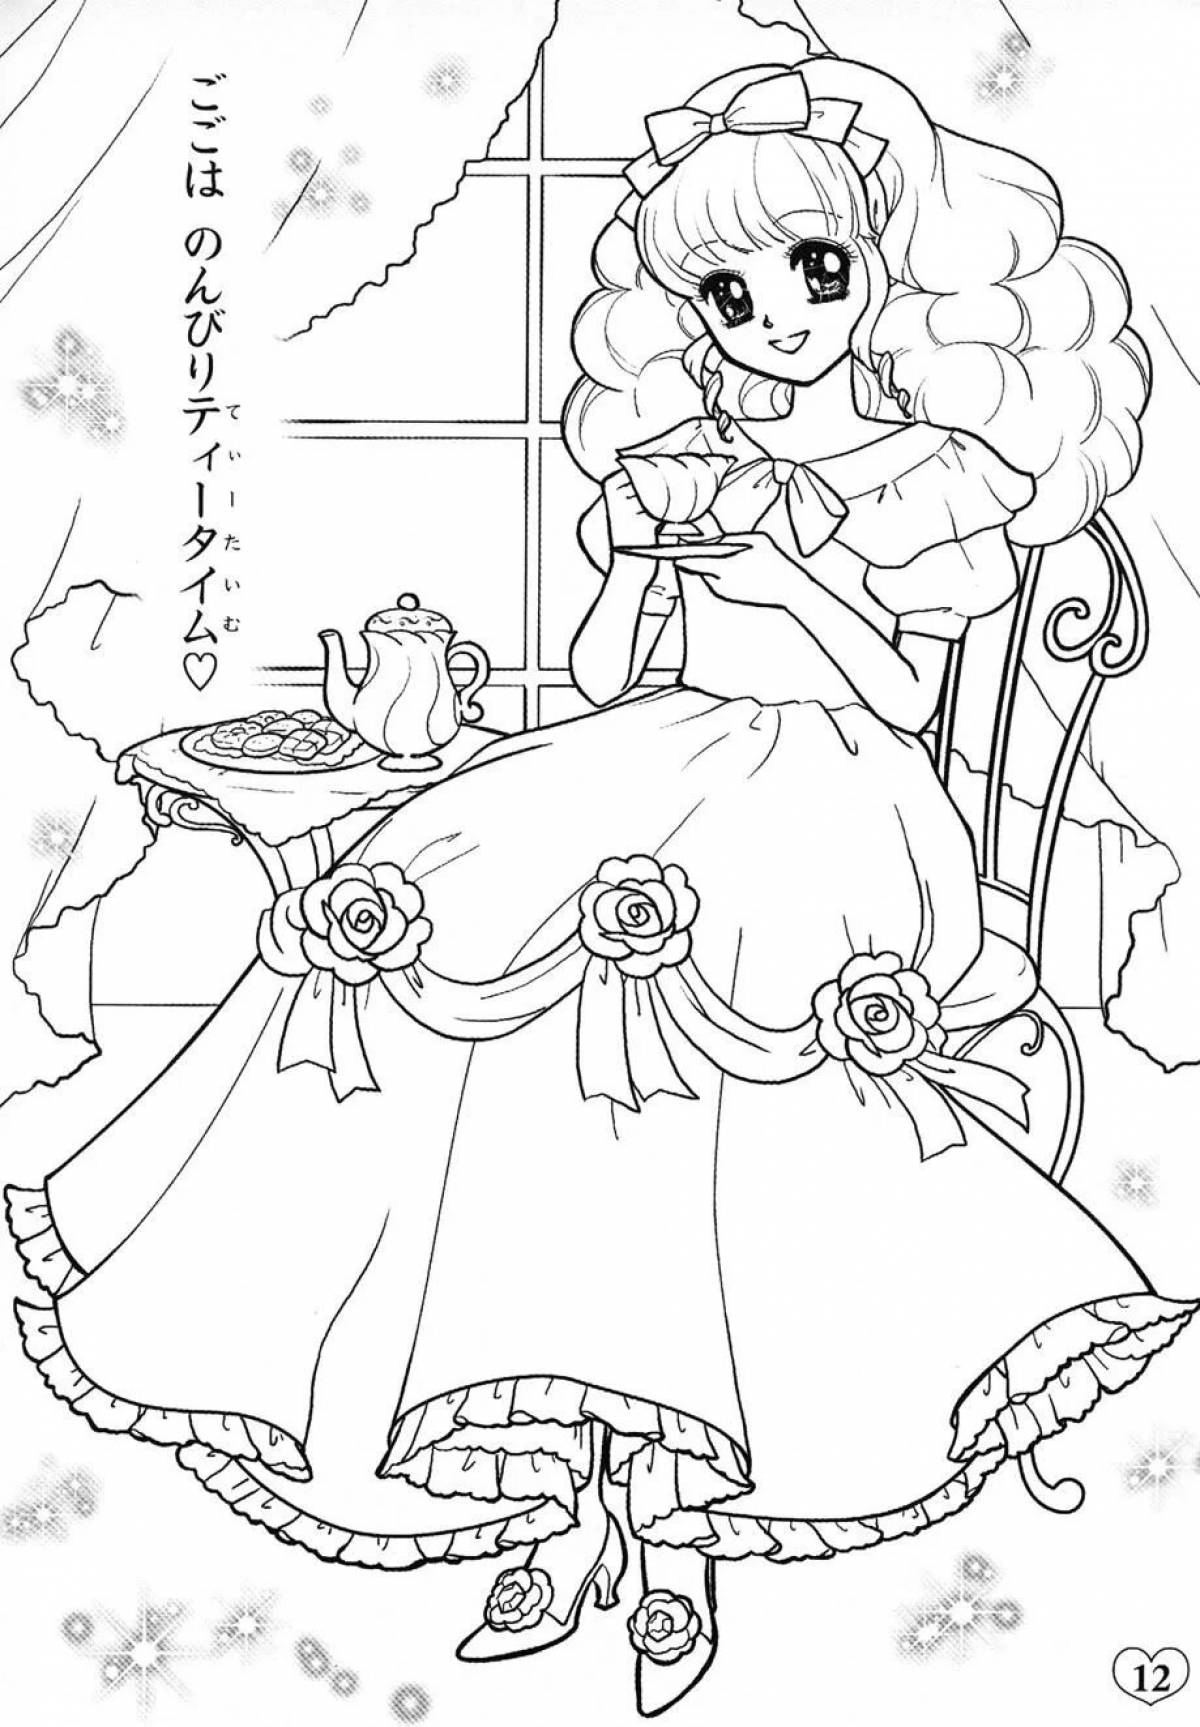 Anime princess #4